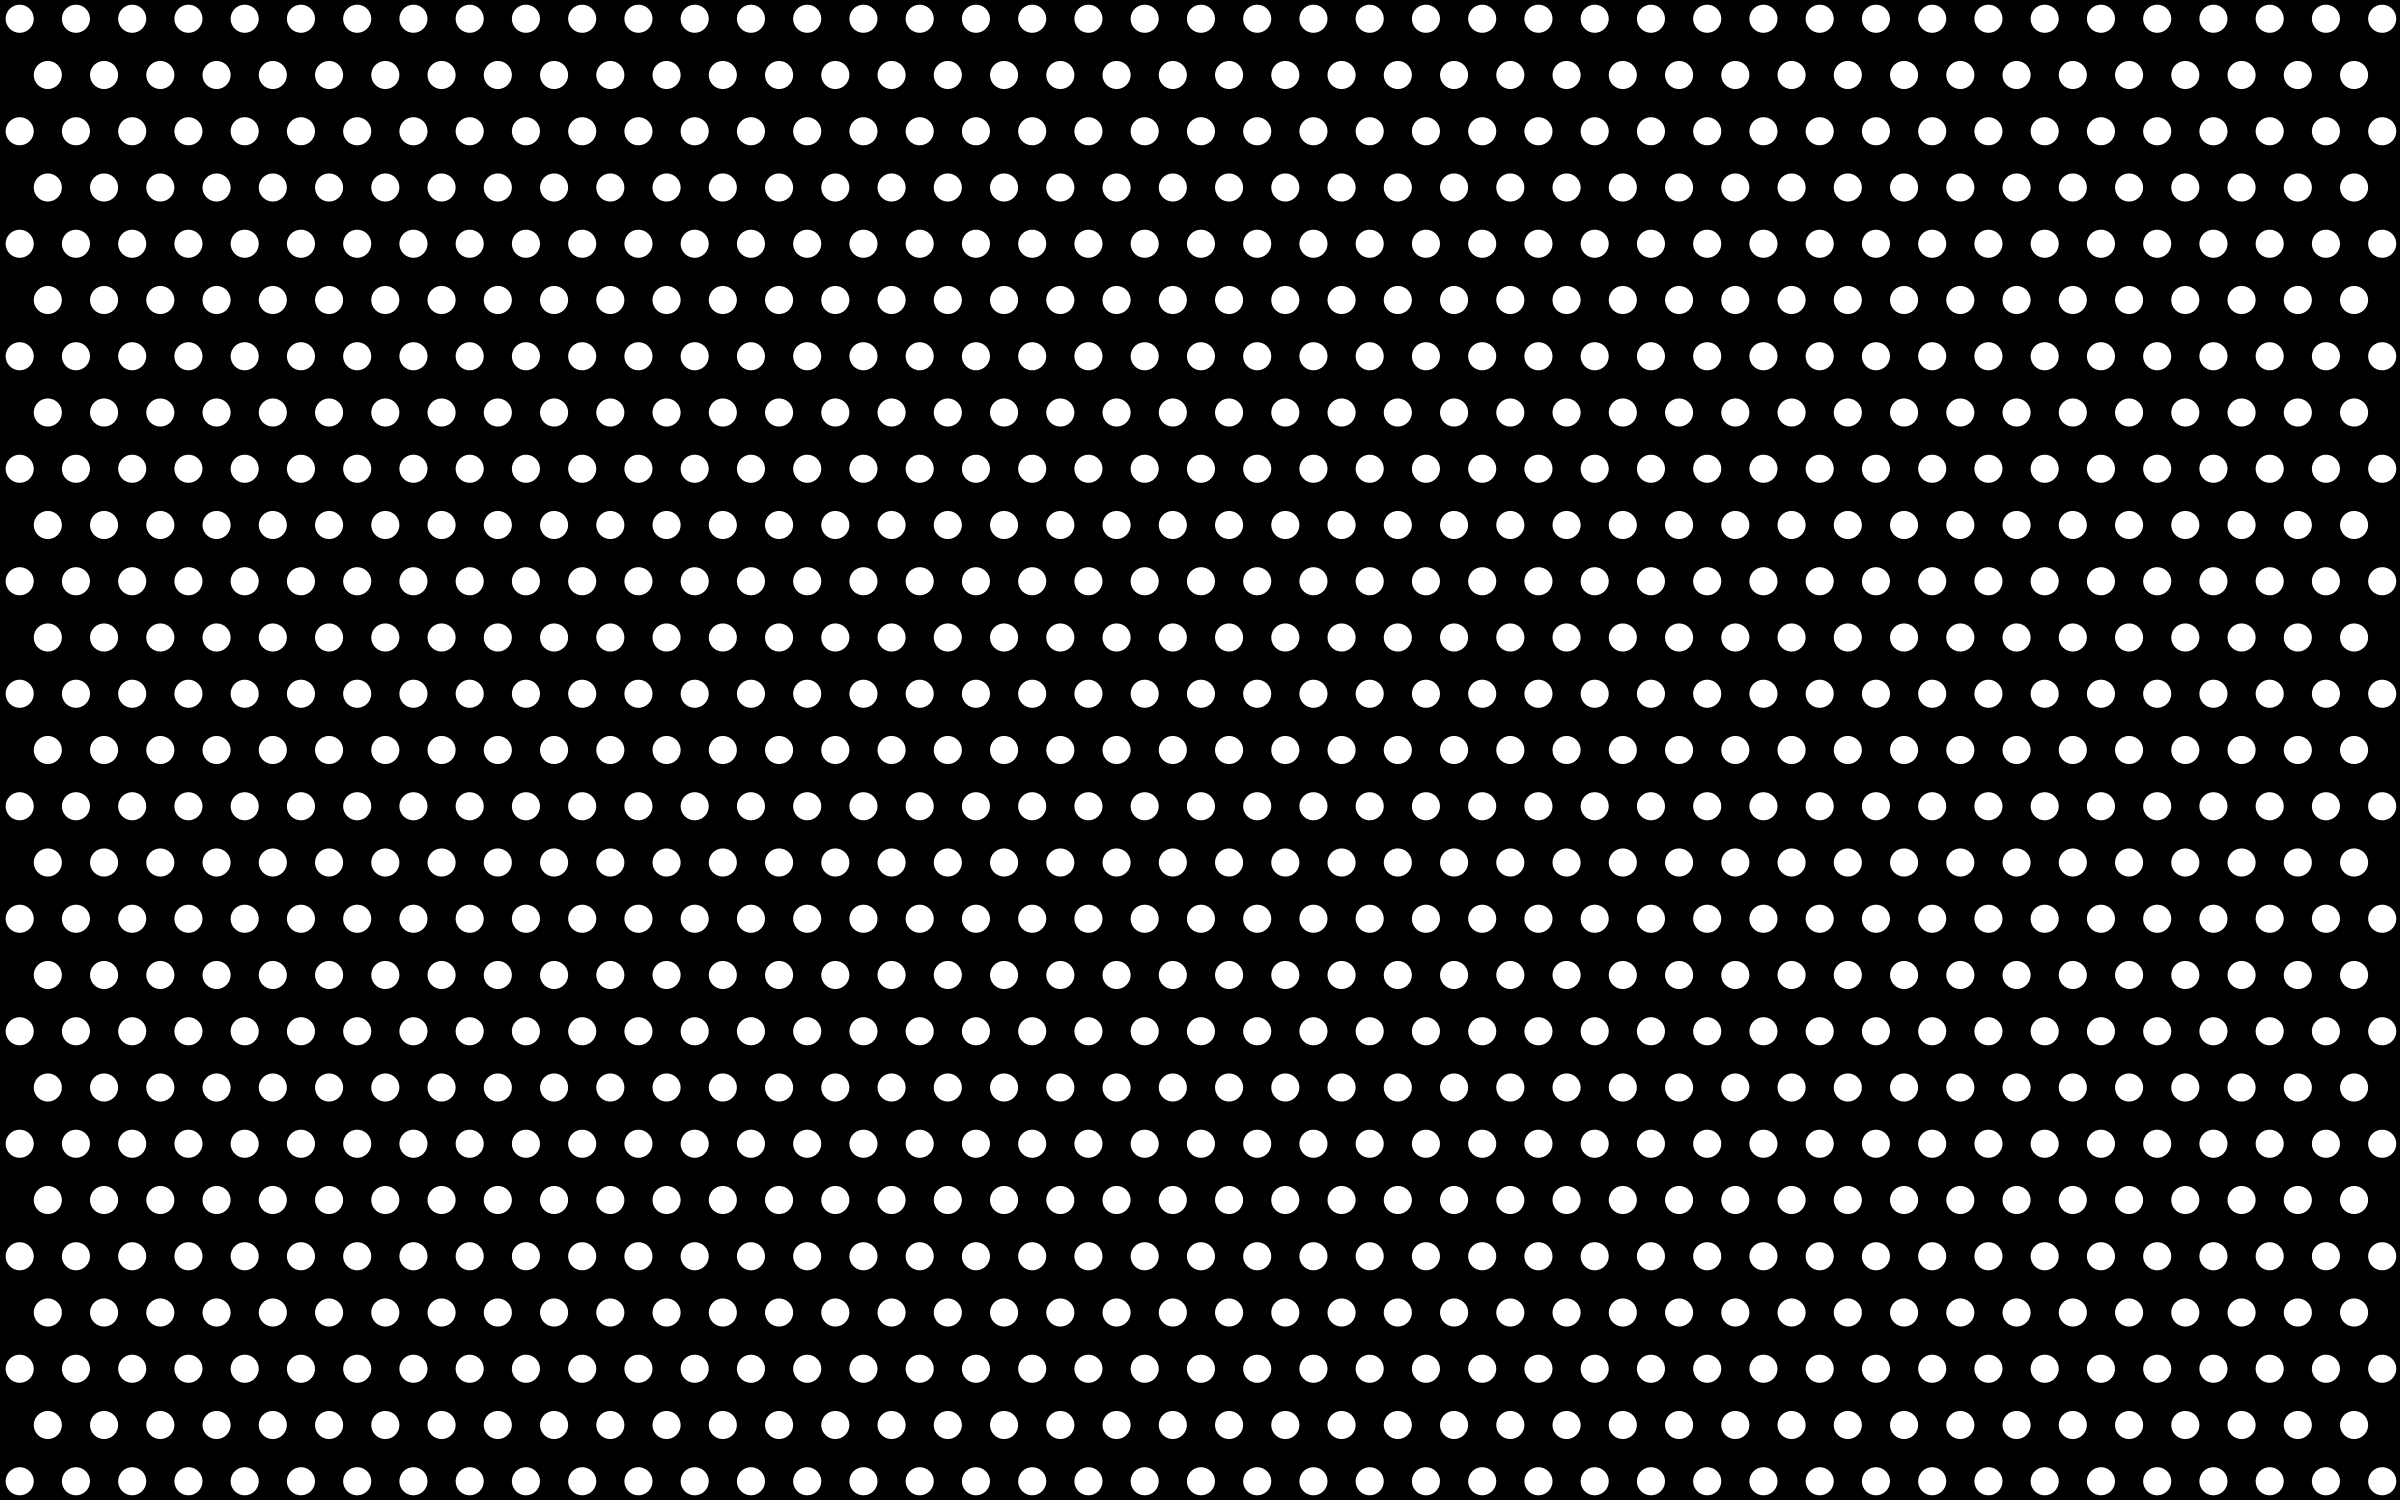 Black and White Polka Dots Mark Clipart Presentation